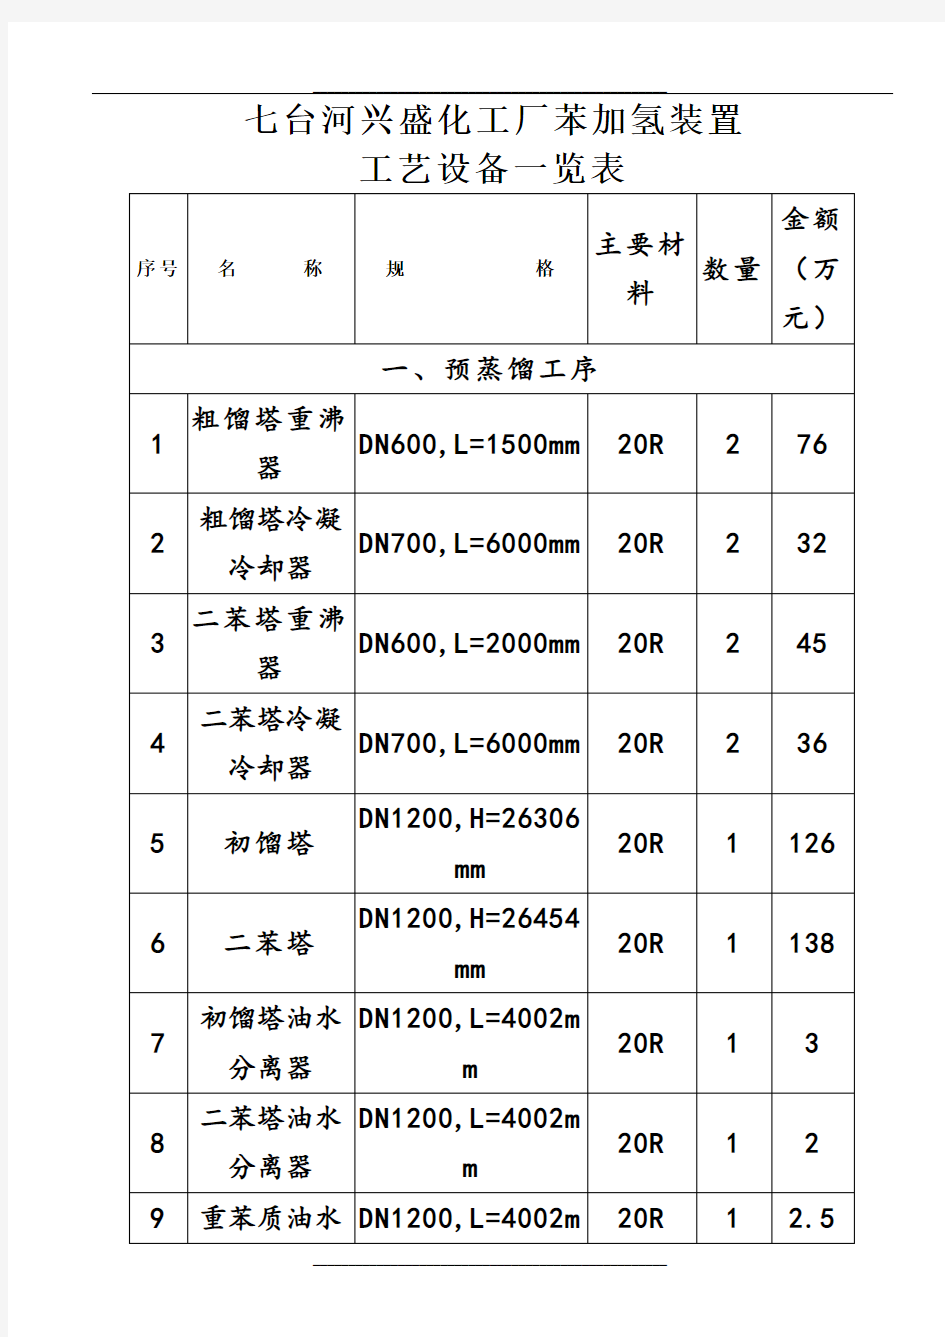 七台河兴盛化工厂工艺设备一览表